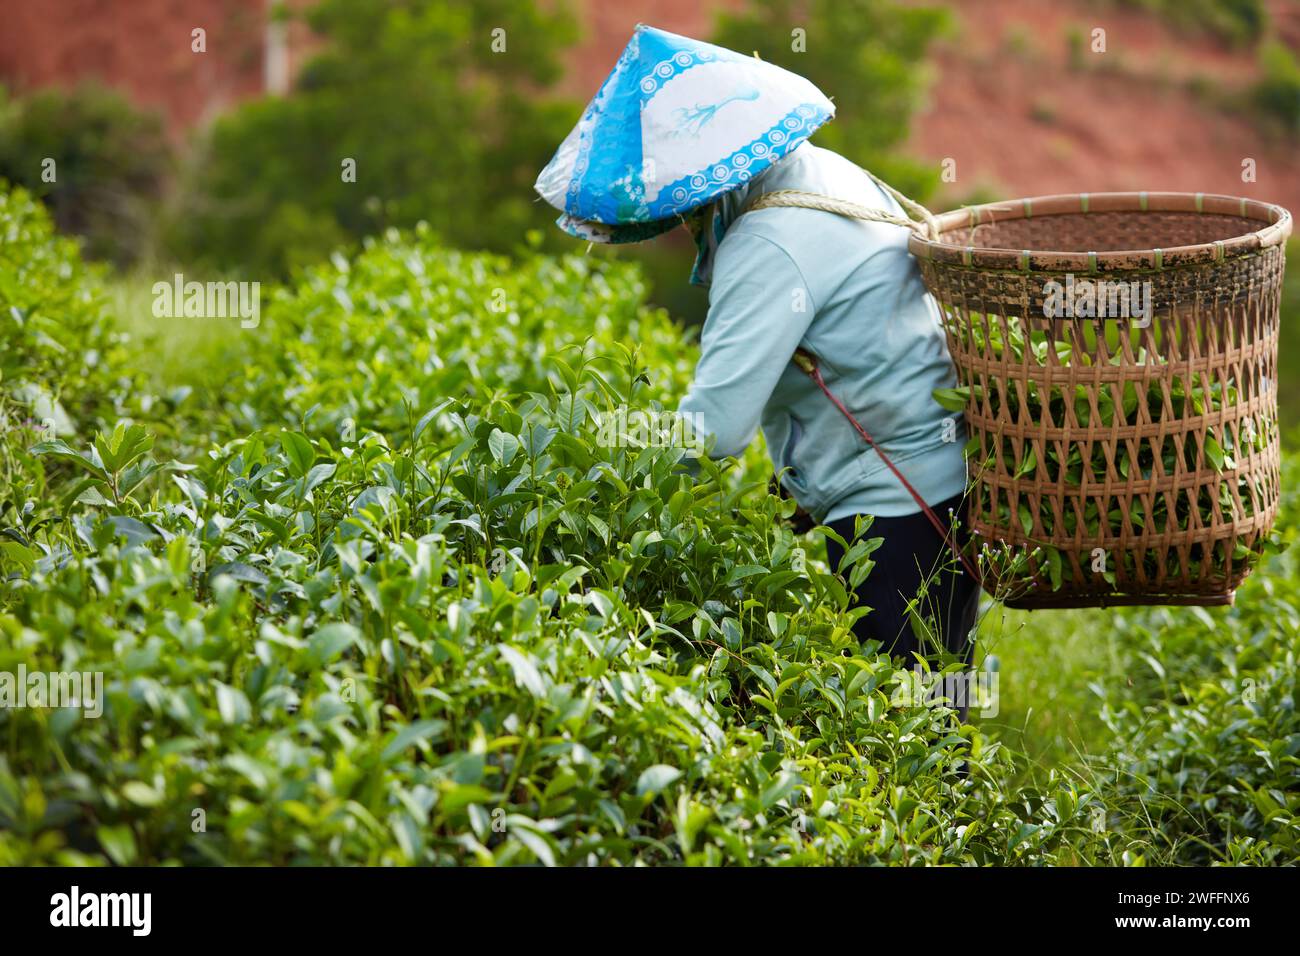 Bao Loc City, Vietnam: Ein Bauer hat einen Bambuskorb auf dem Rücken und pflückt mit einem konischen Hut frische grüne Teeblätter auf einer Teeplantage im Ohr Stockfoto